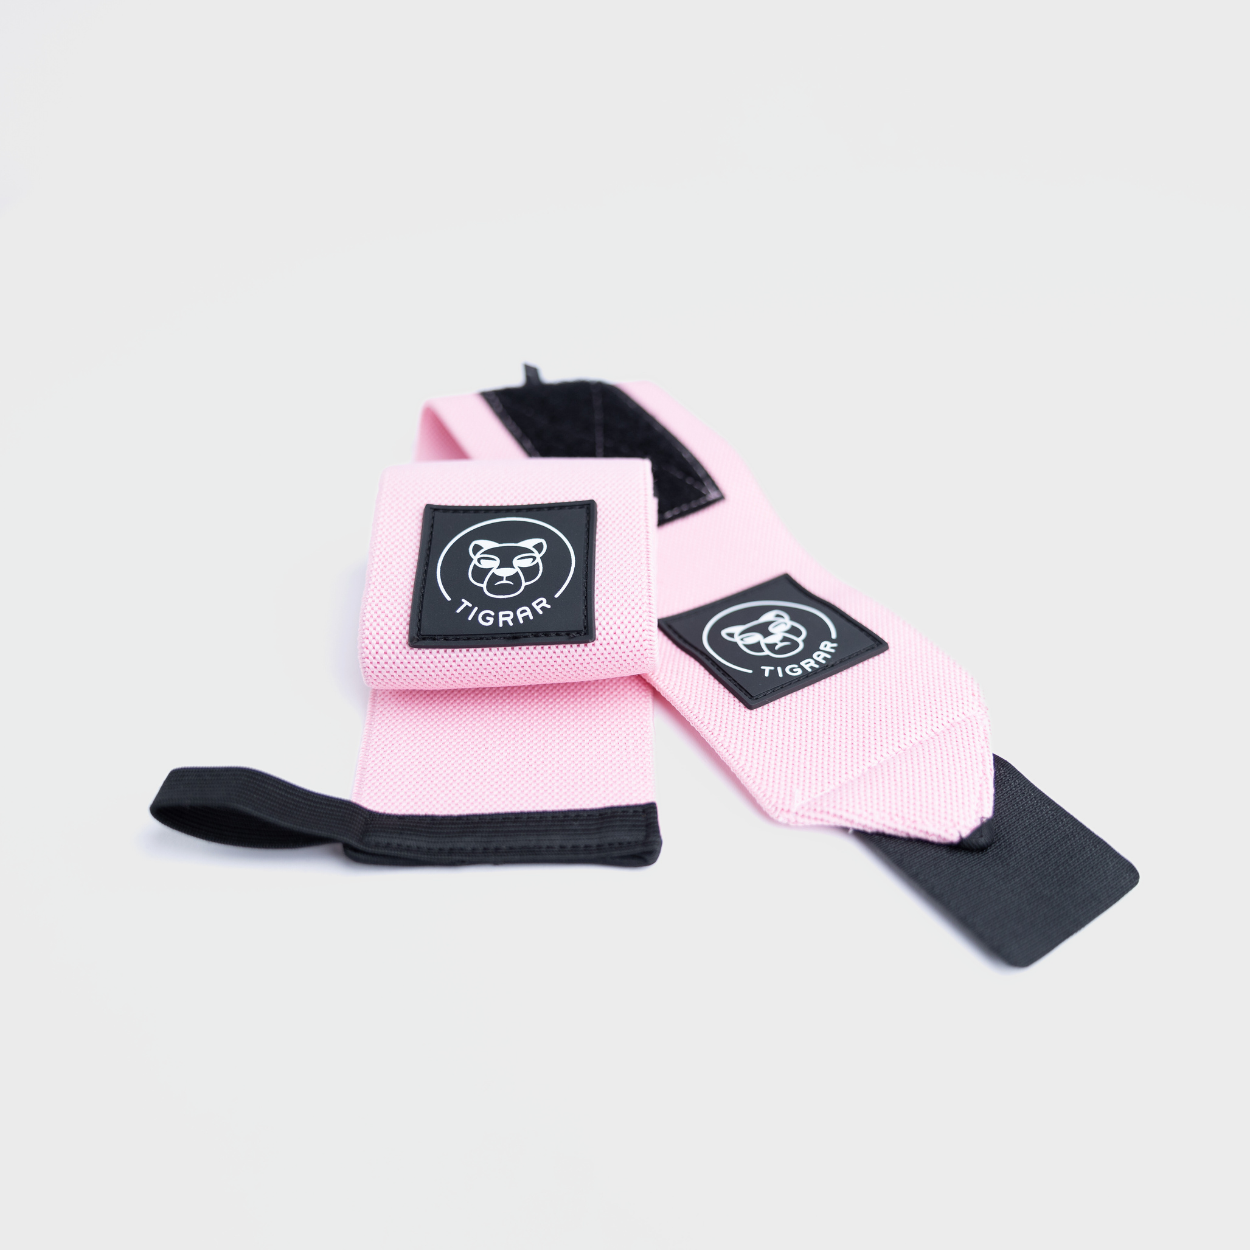 Functionele roze Tigrar wrist wraps, voor verbeterde bescherming en steun